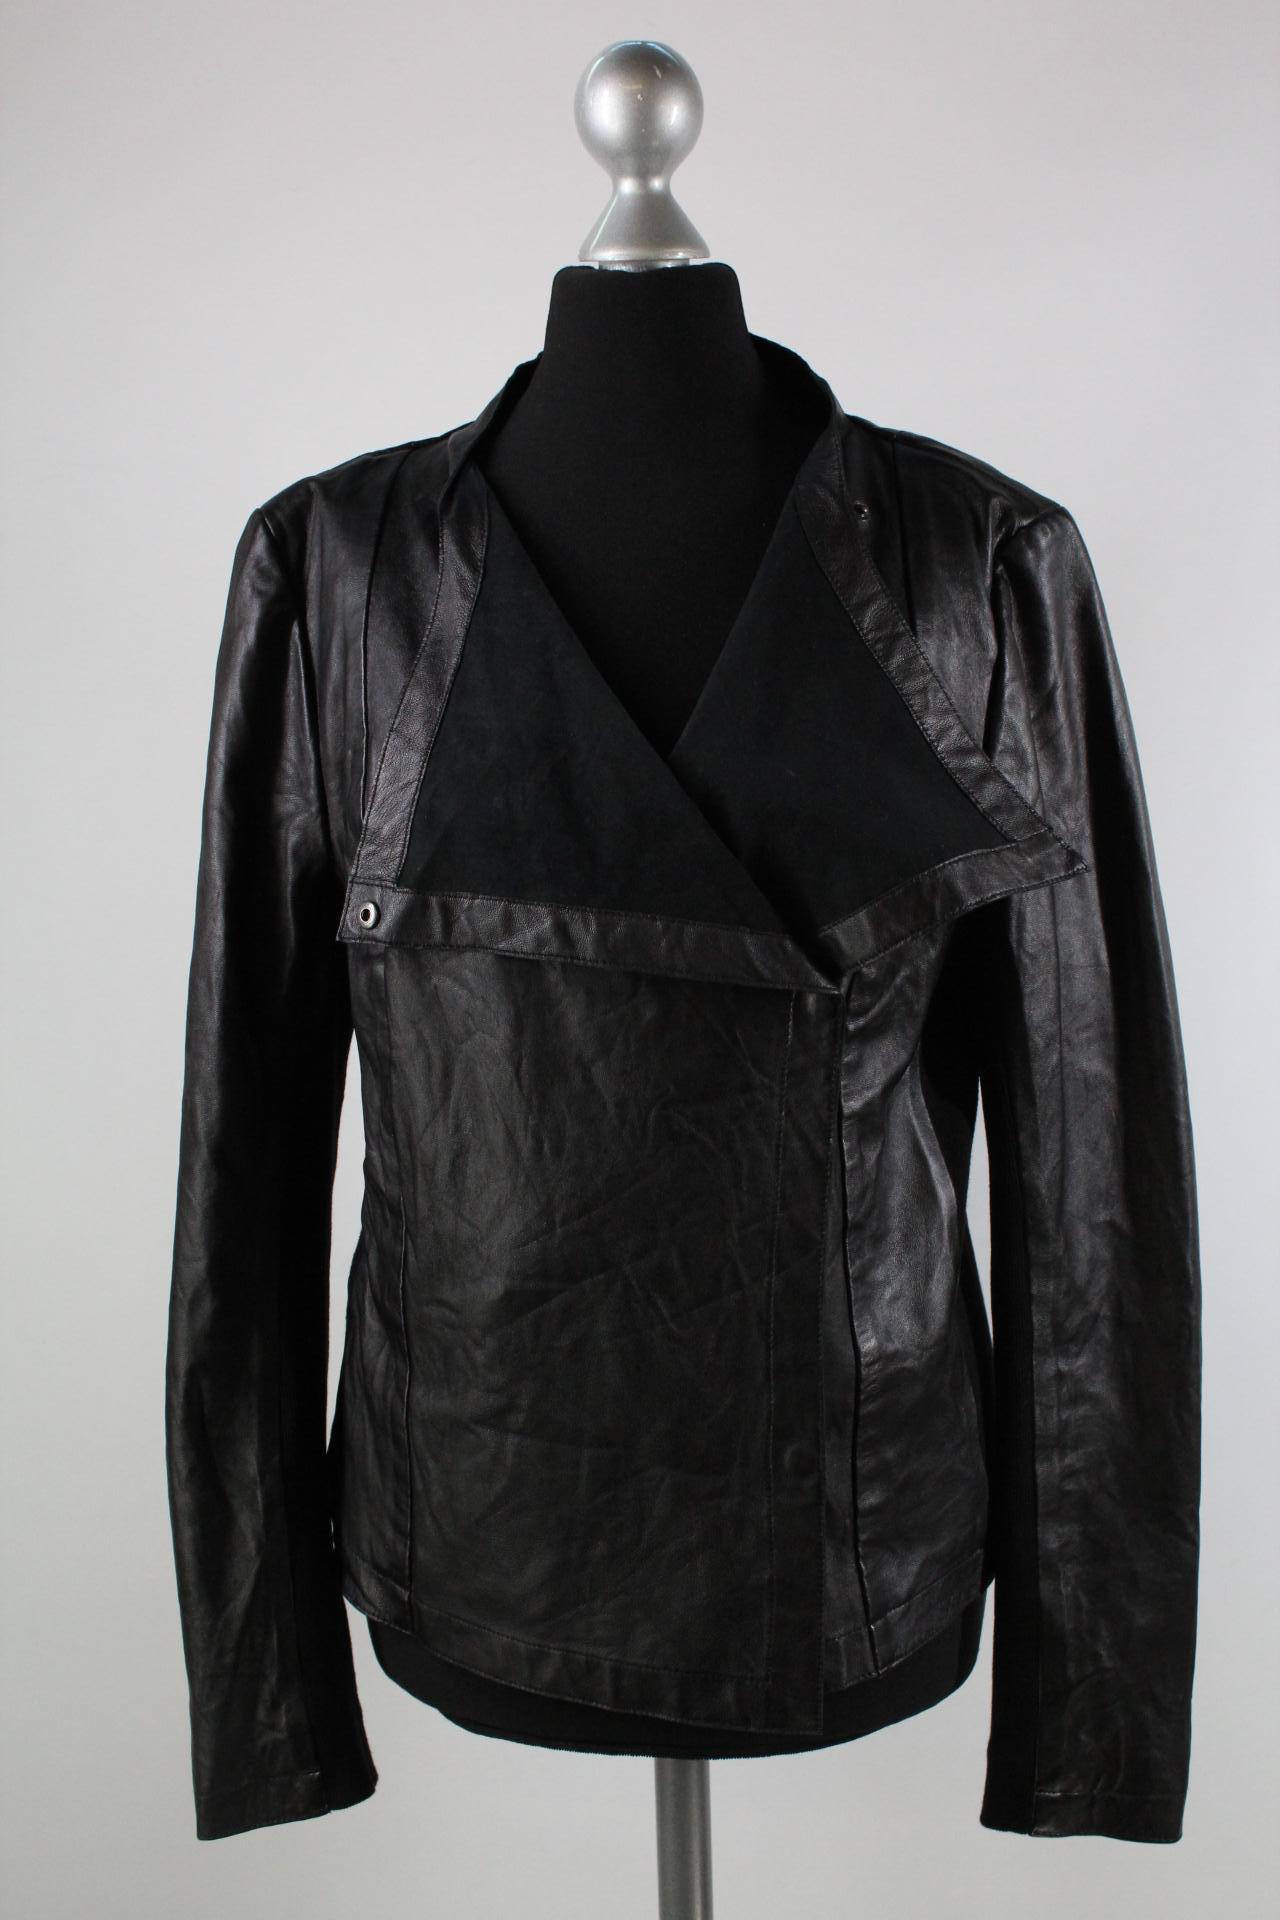 Transmission Damen-Lederjacke schwarz Größe M